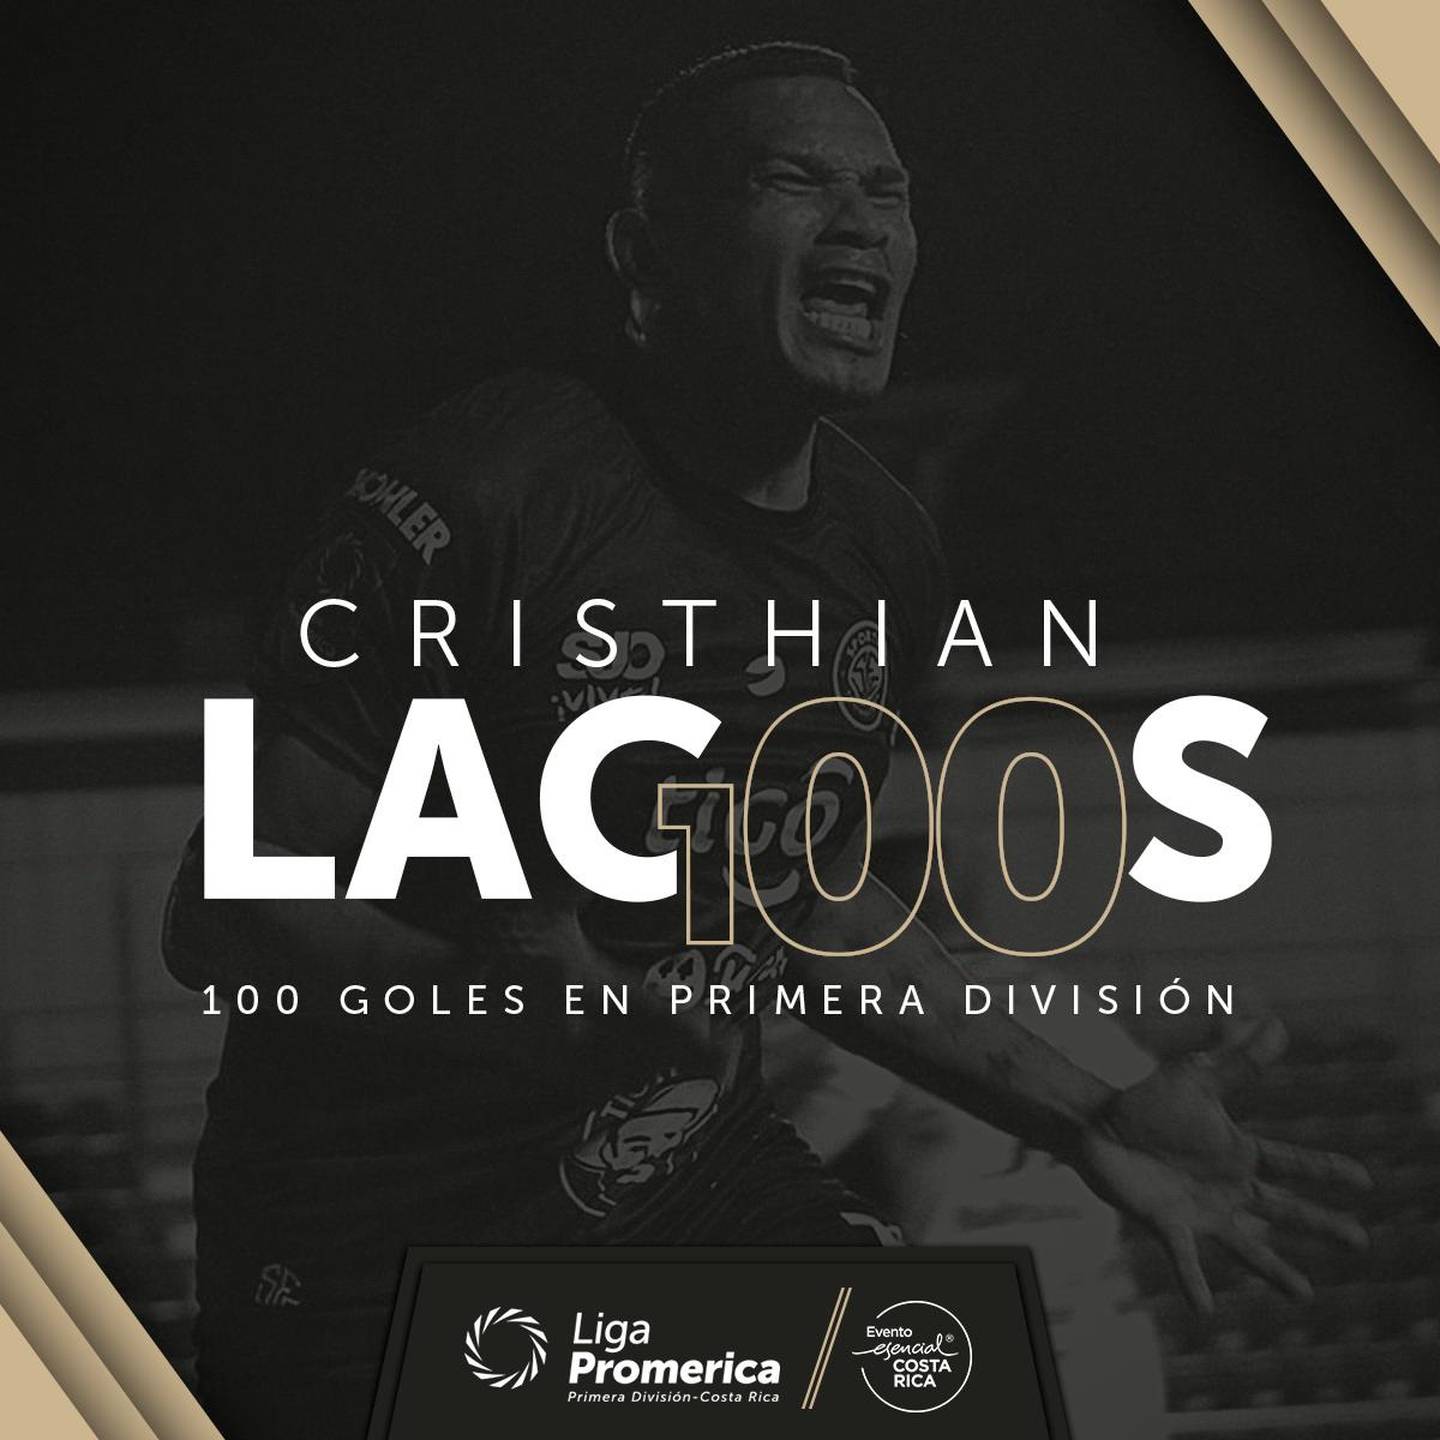 Cristian Lagos y su gol 100 en primera división. Unafut.